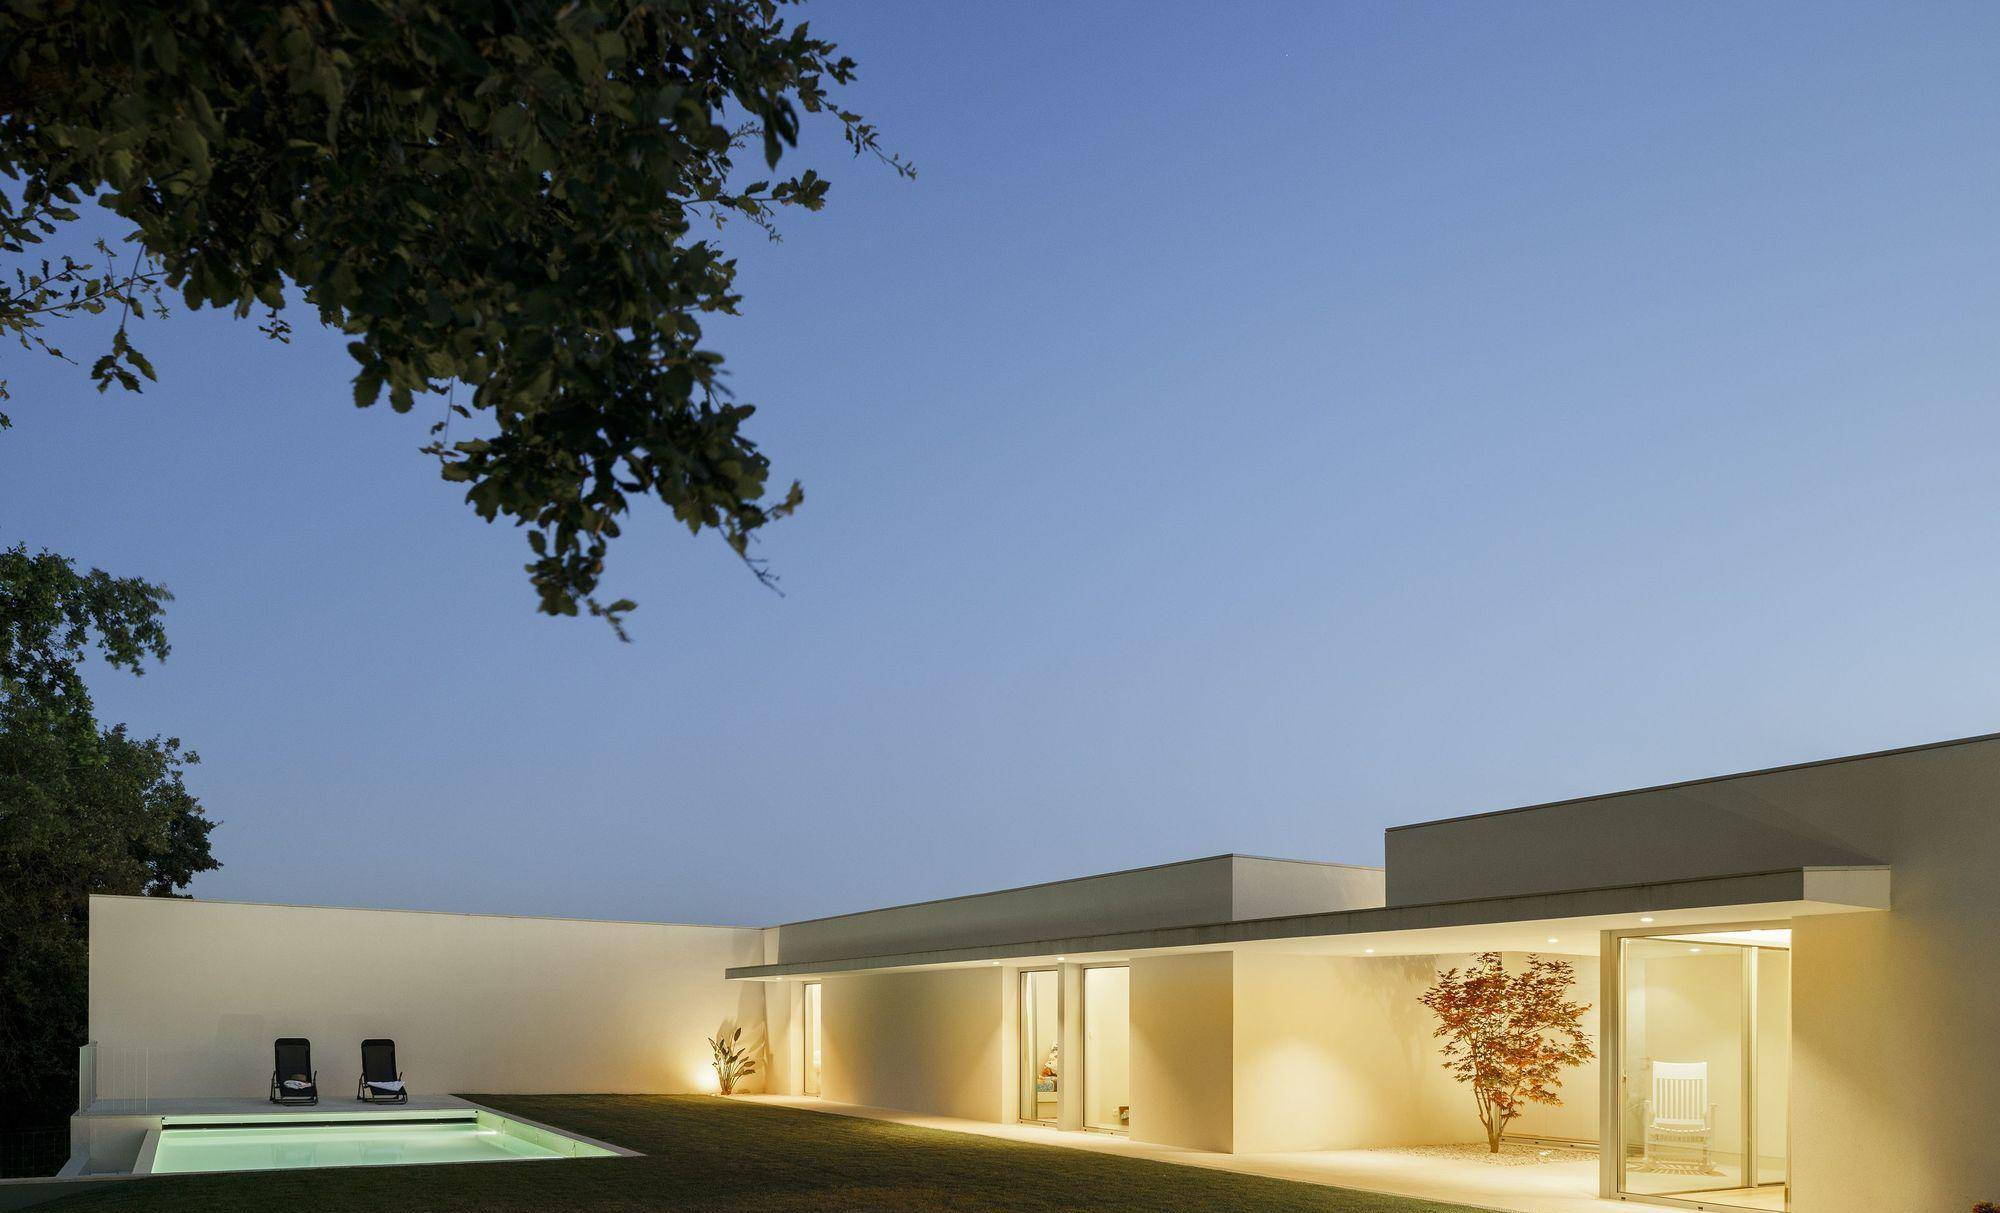 葡萄牙极简乡村别墅,米白色建筑体量形成均衡美感